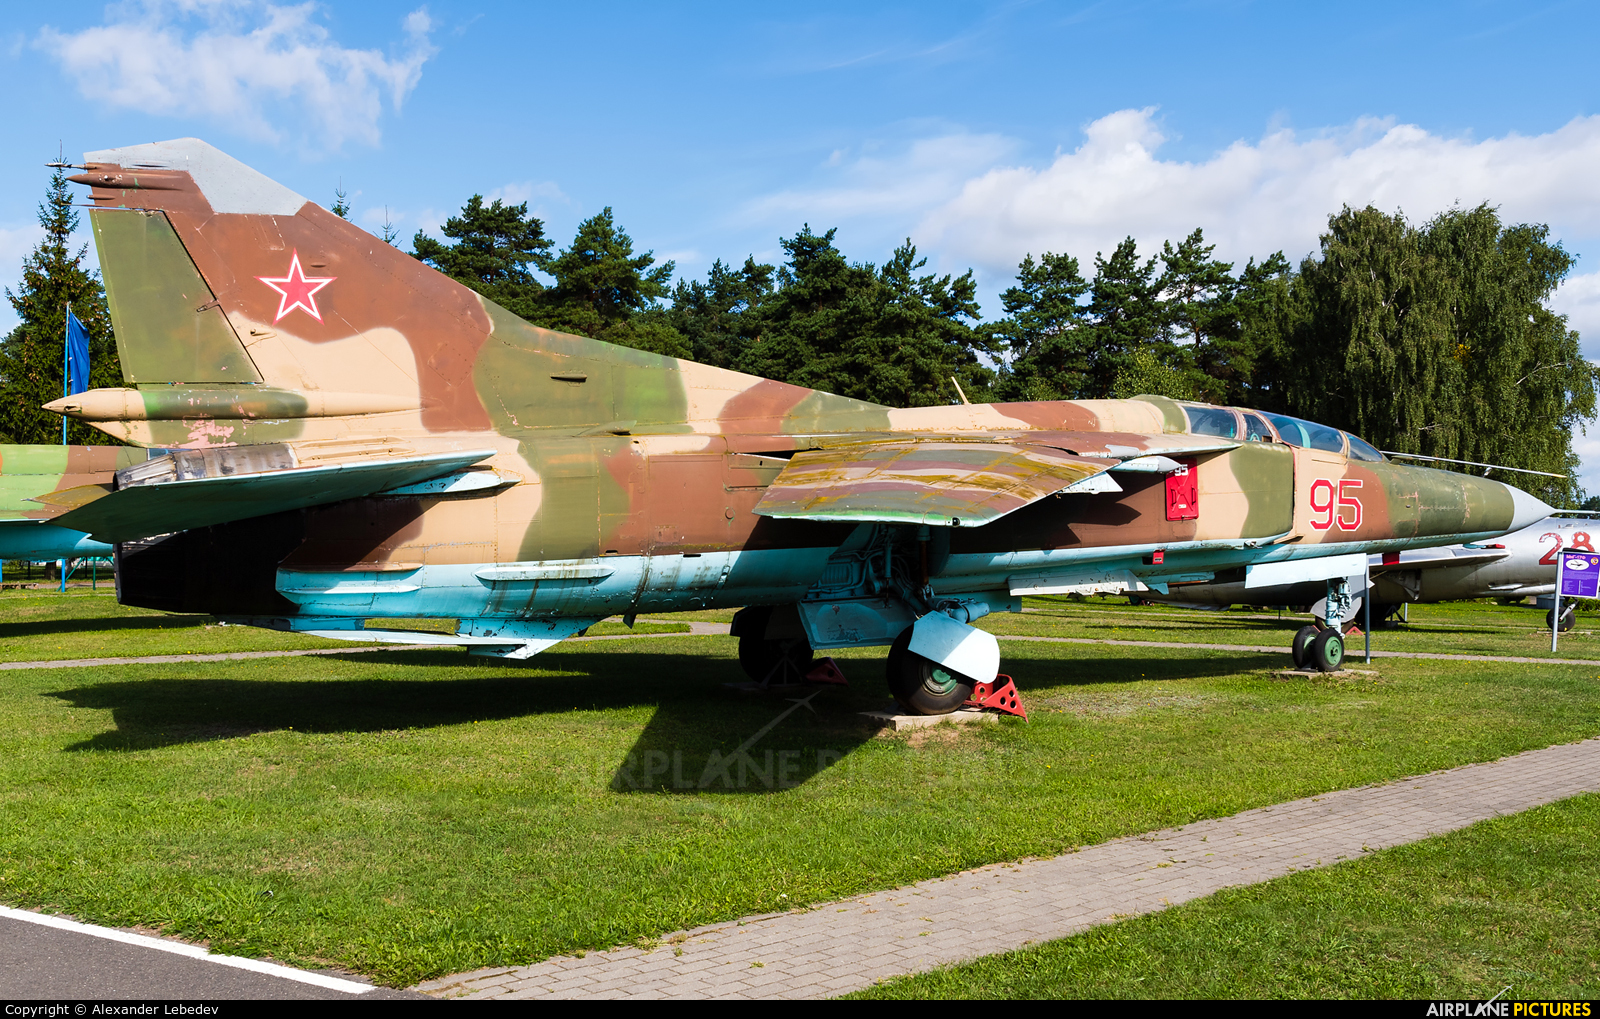 Belarus - Air Force 95 aircraft at Minsk Intl